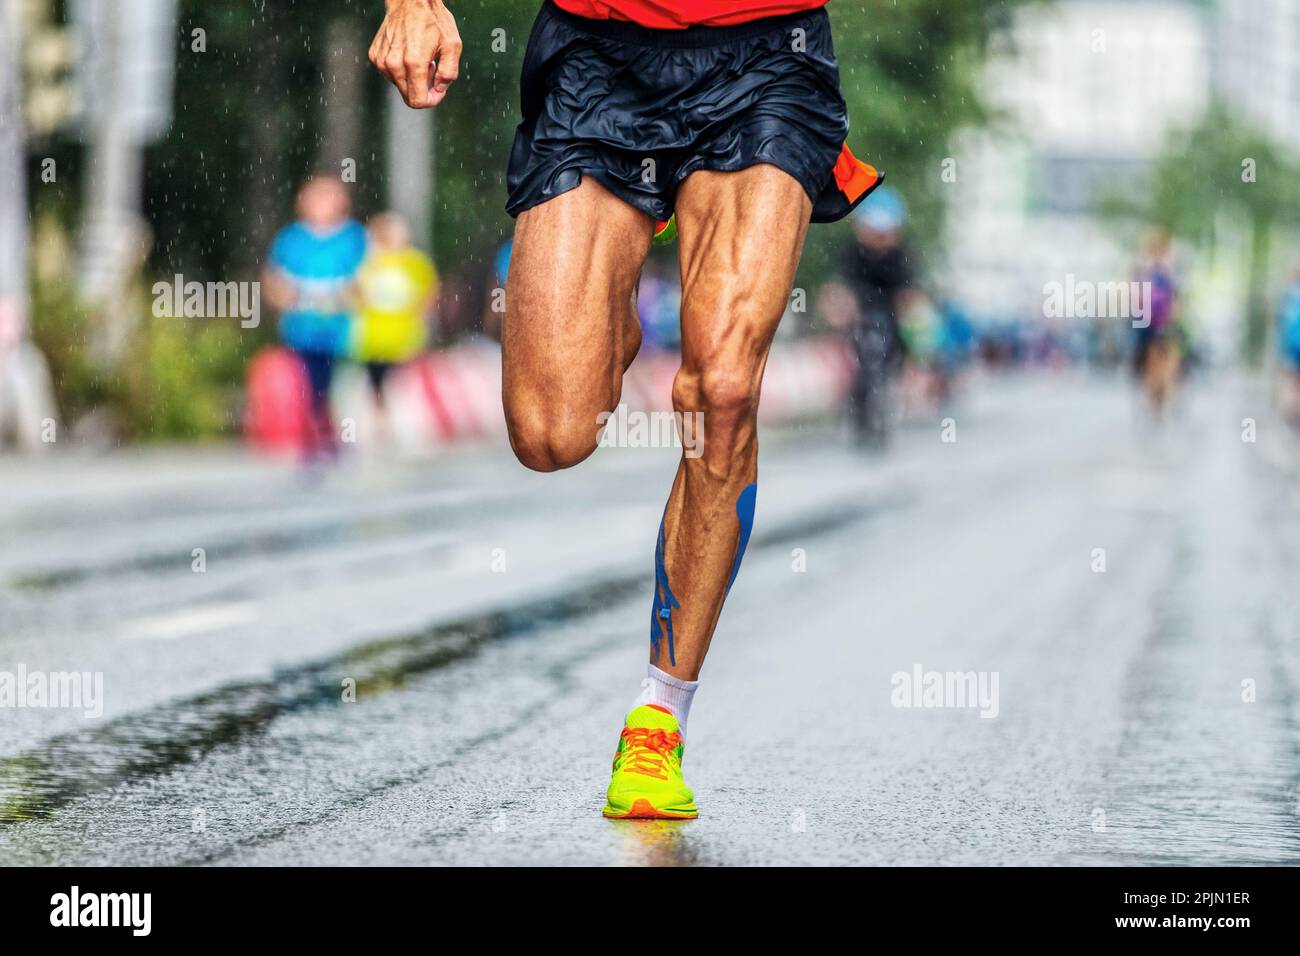 Nahaufnahme muskuläre Beine männlicher Läufer läuft Marathon City Race, Athlet läuft nach Regen auf nassem Asphalt Stockfoto